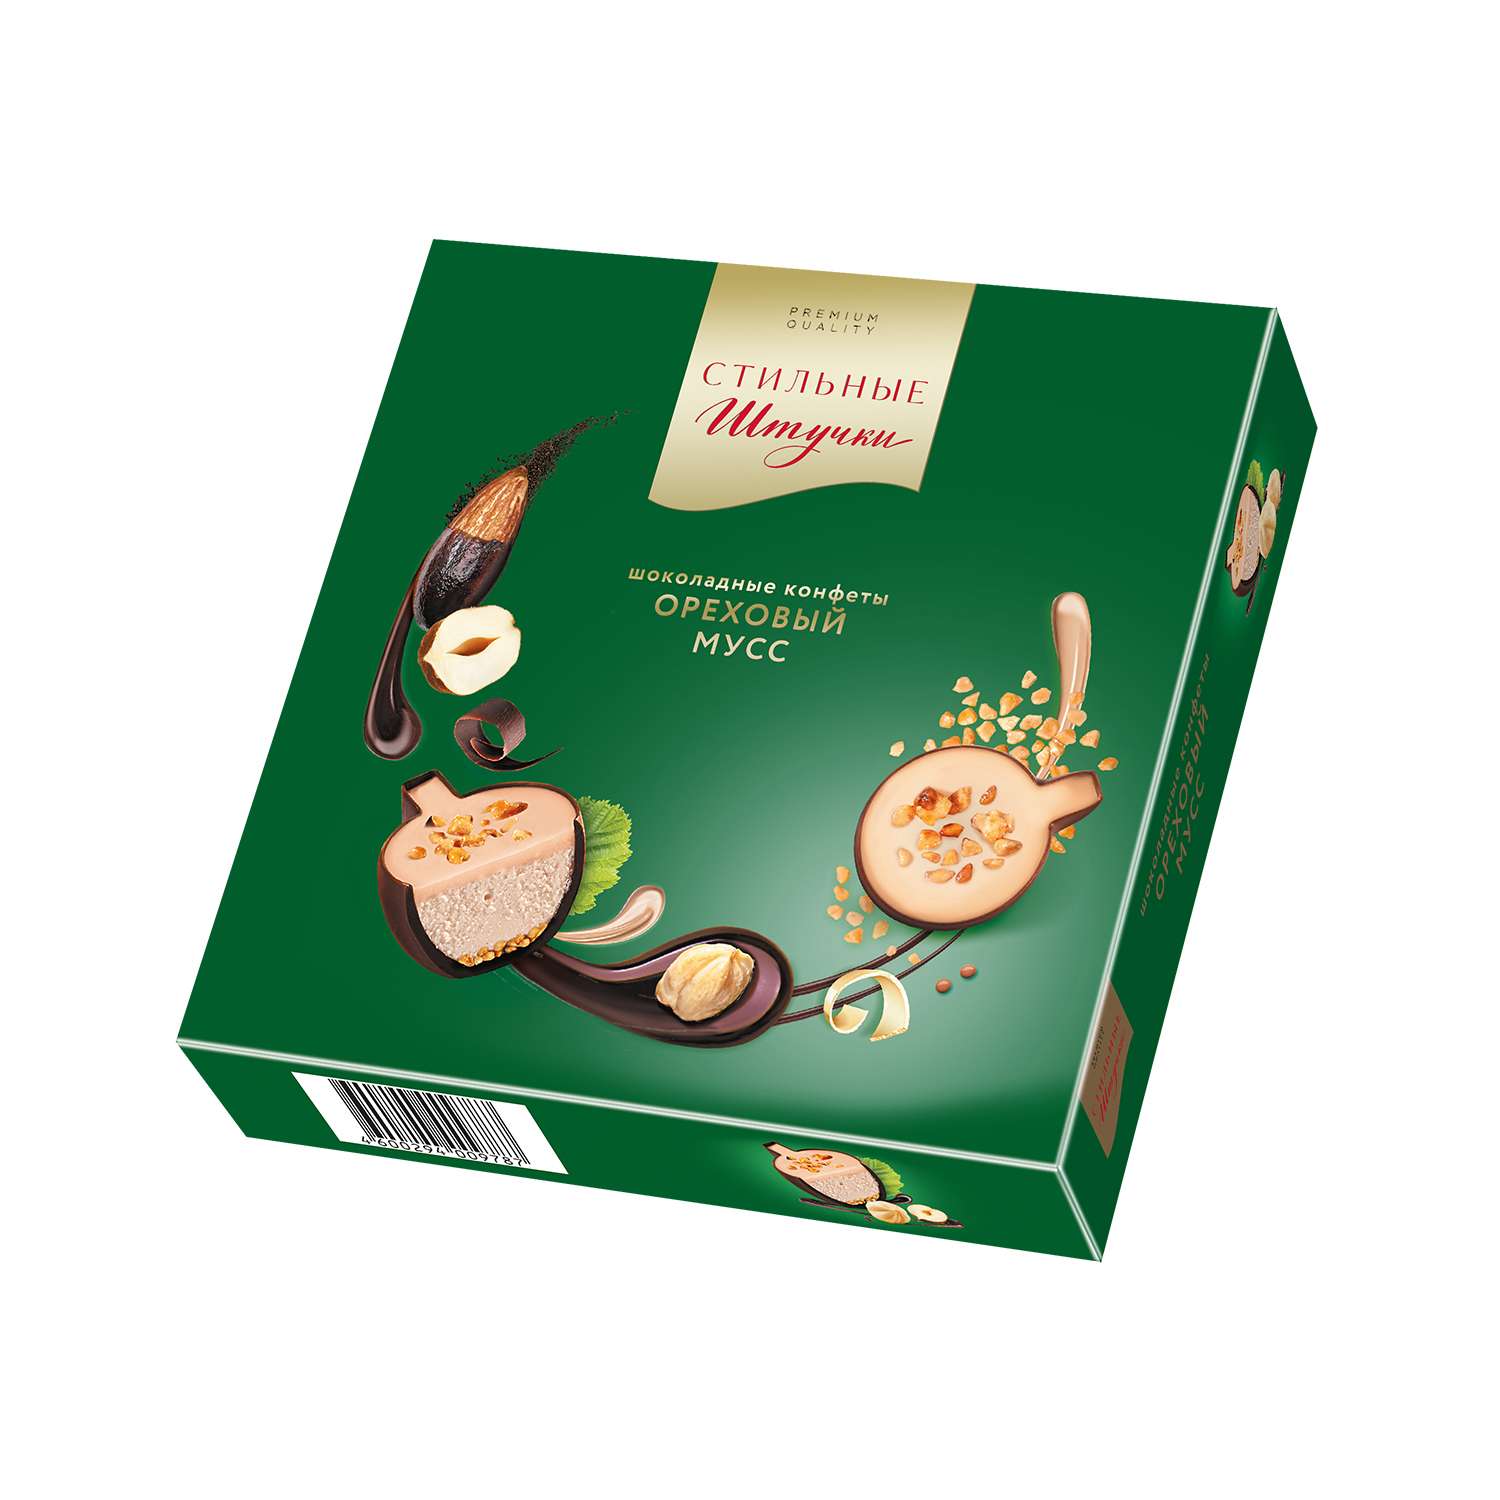 Шоколадные конфеты Стильные штучки Ореховый мусс в подарочной коробке 104 г - фото 1